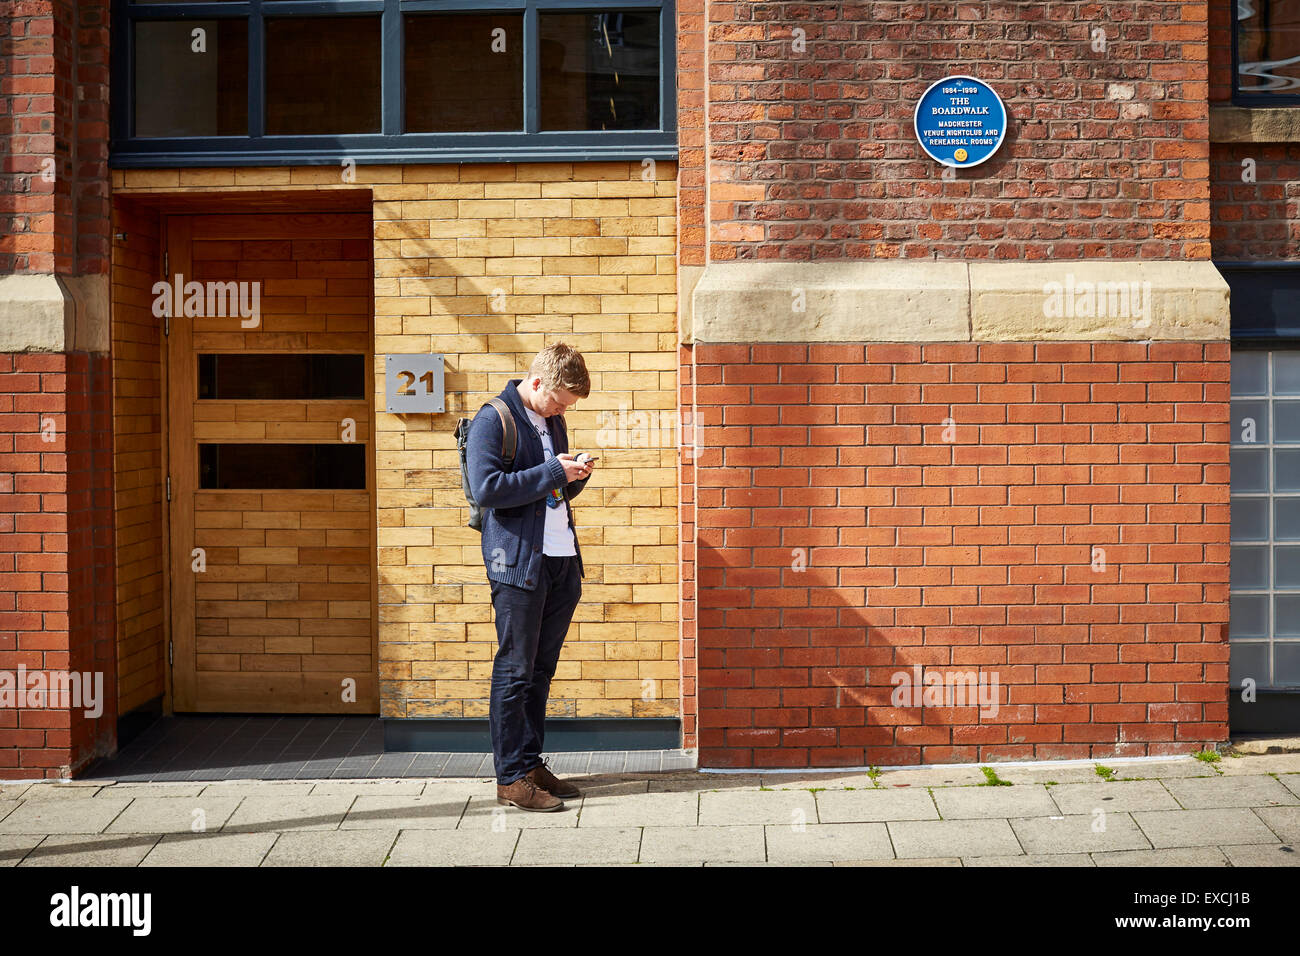 Il vecchio Boardwalk nightclub di Manchester Regno Unito un uomo passa si ferma al testo dal telefono mobile cellulare che stanno guardando sullo schermo texting sm Foto Stock